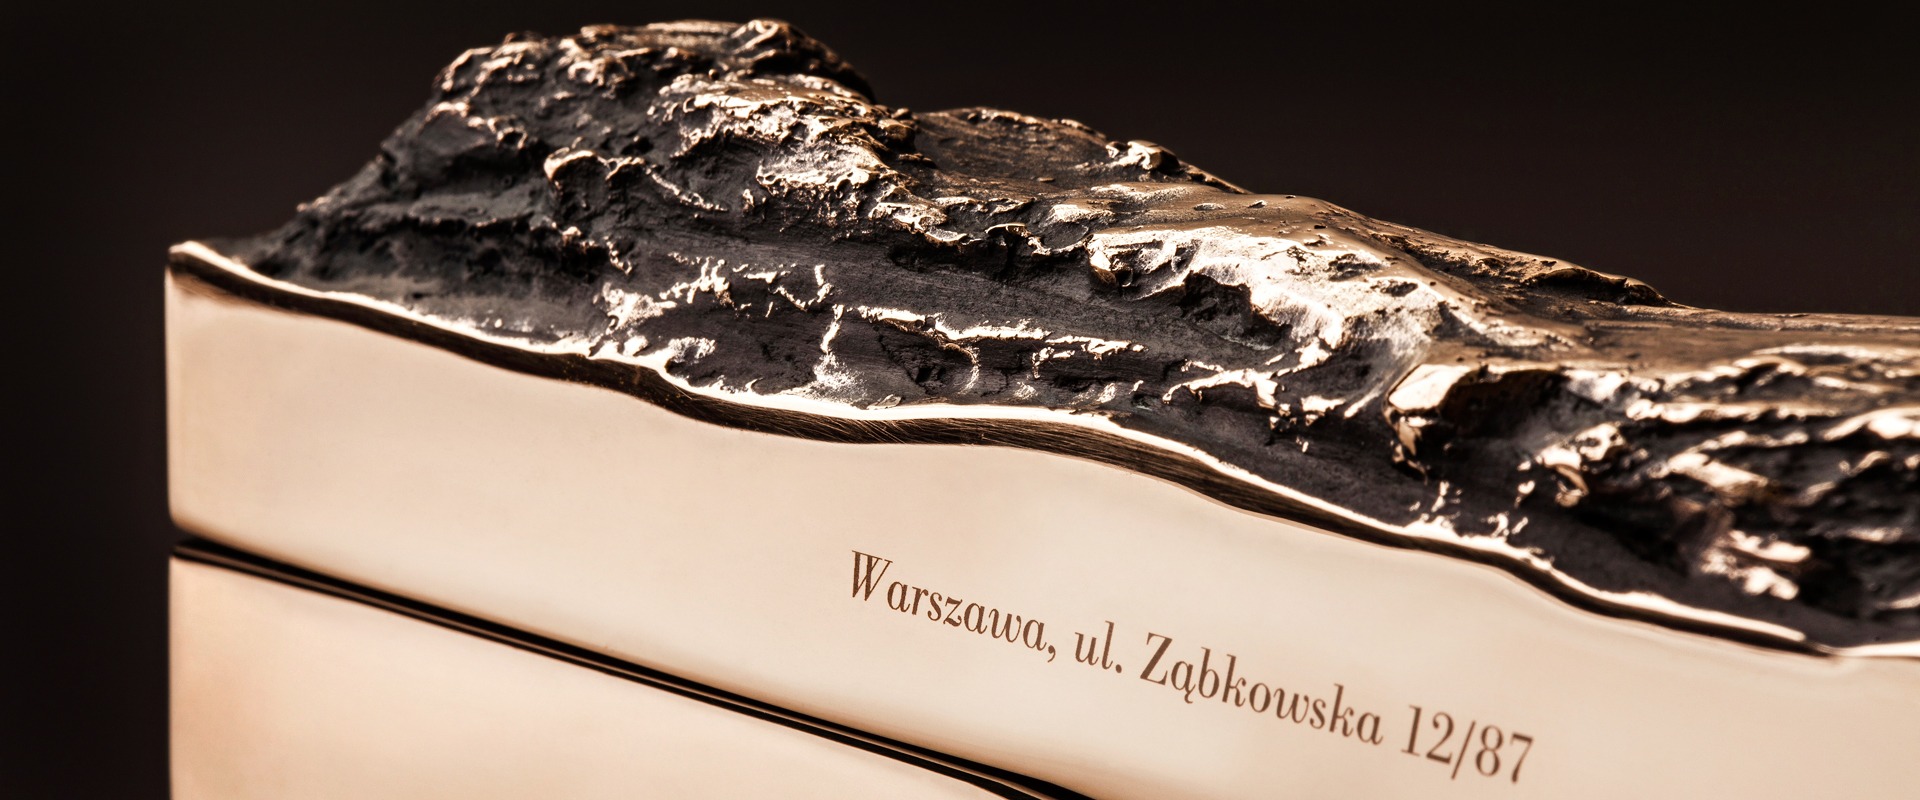 WARSAW BRONZE MEZUZAH BY MI POLIN NEW MEZUZAH BASED ON MEZUZAH TRACE FOUND AT ZABKOWSKA STREET IN WARSAW POLAND. CONTEMPORARY JUDAICA.